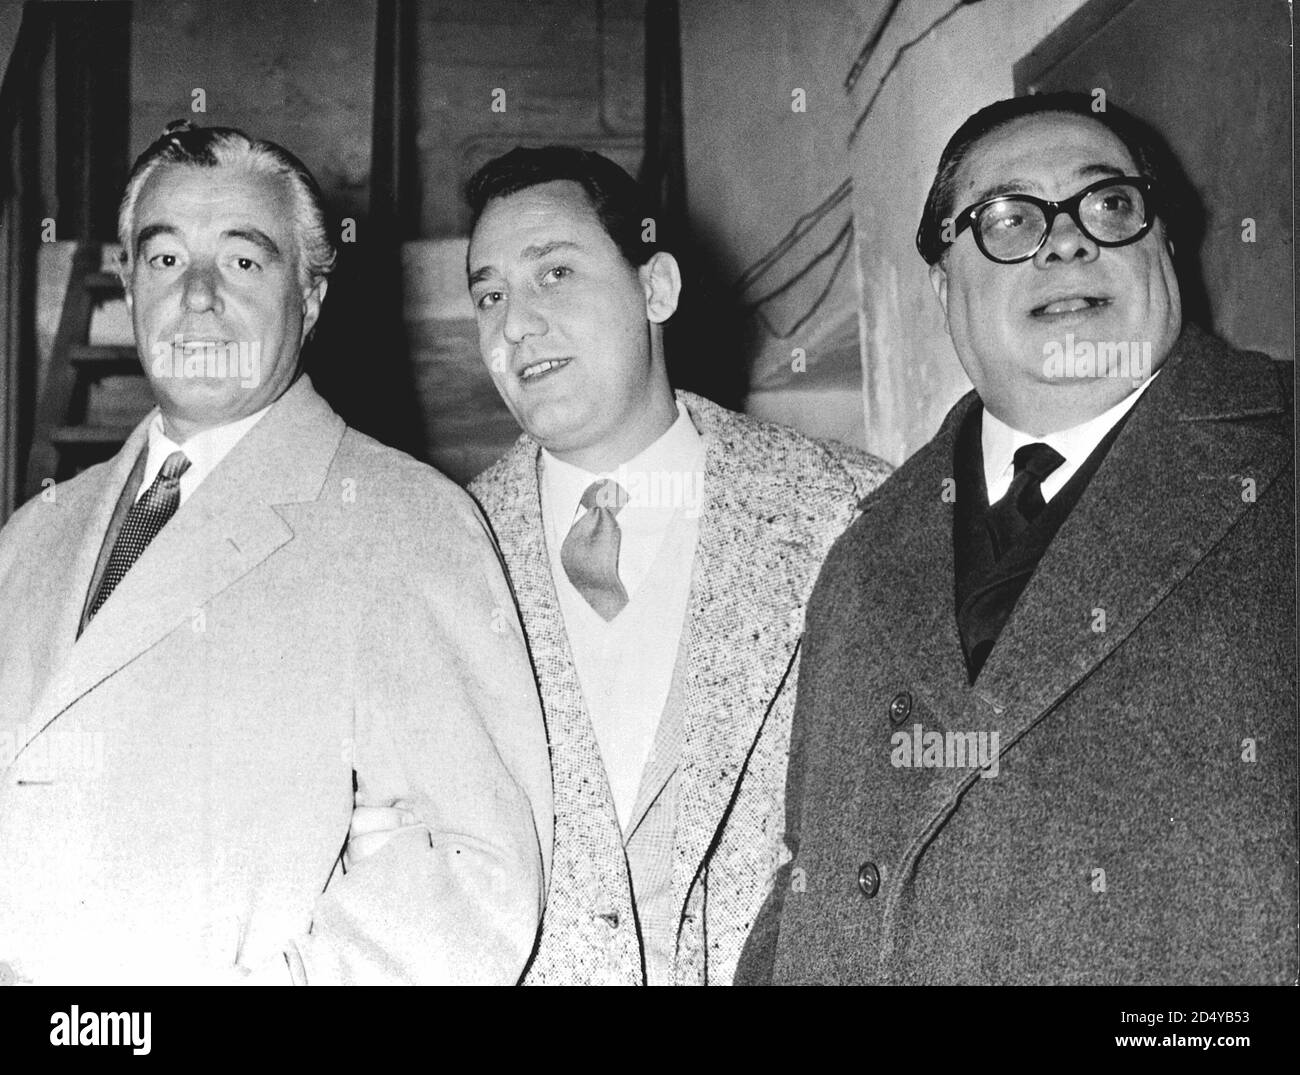 Vittorio De Sica, Alberto Sordi and Aldo Fabrizi, photographed at the  Sistina theater, on the occasion of a gala organized by the Solidarieta  'Cinematografica fund, Rome, 30 January 1956. --- Vittorio De